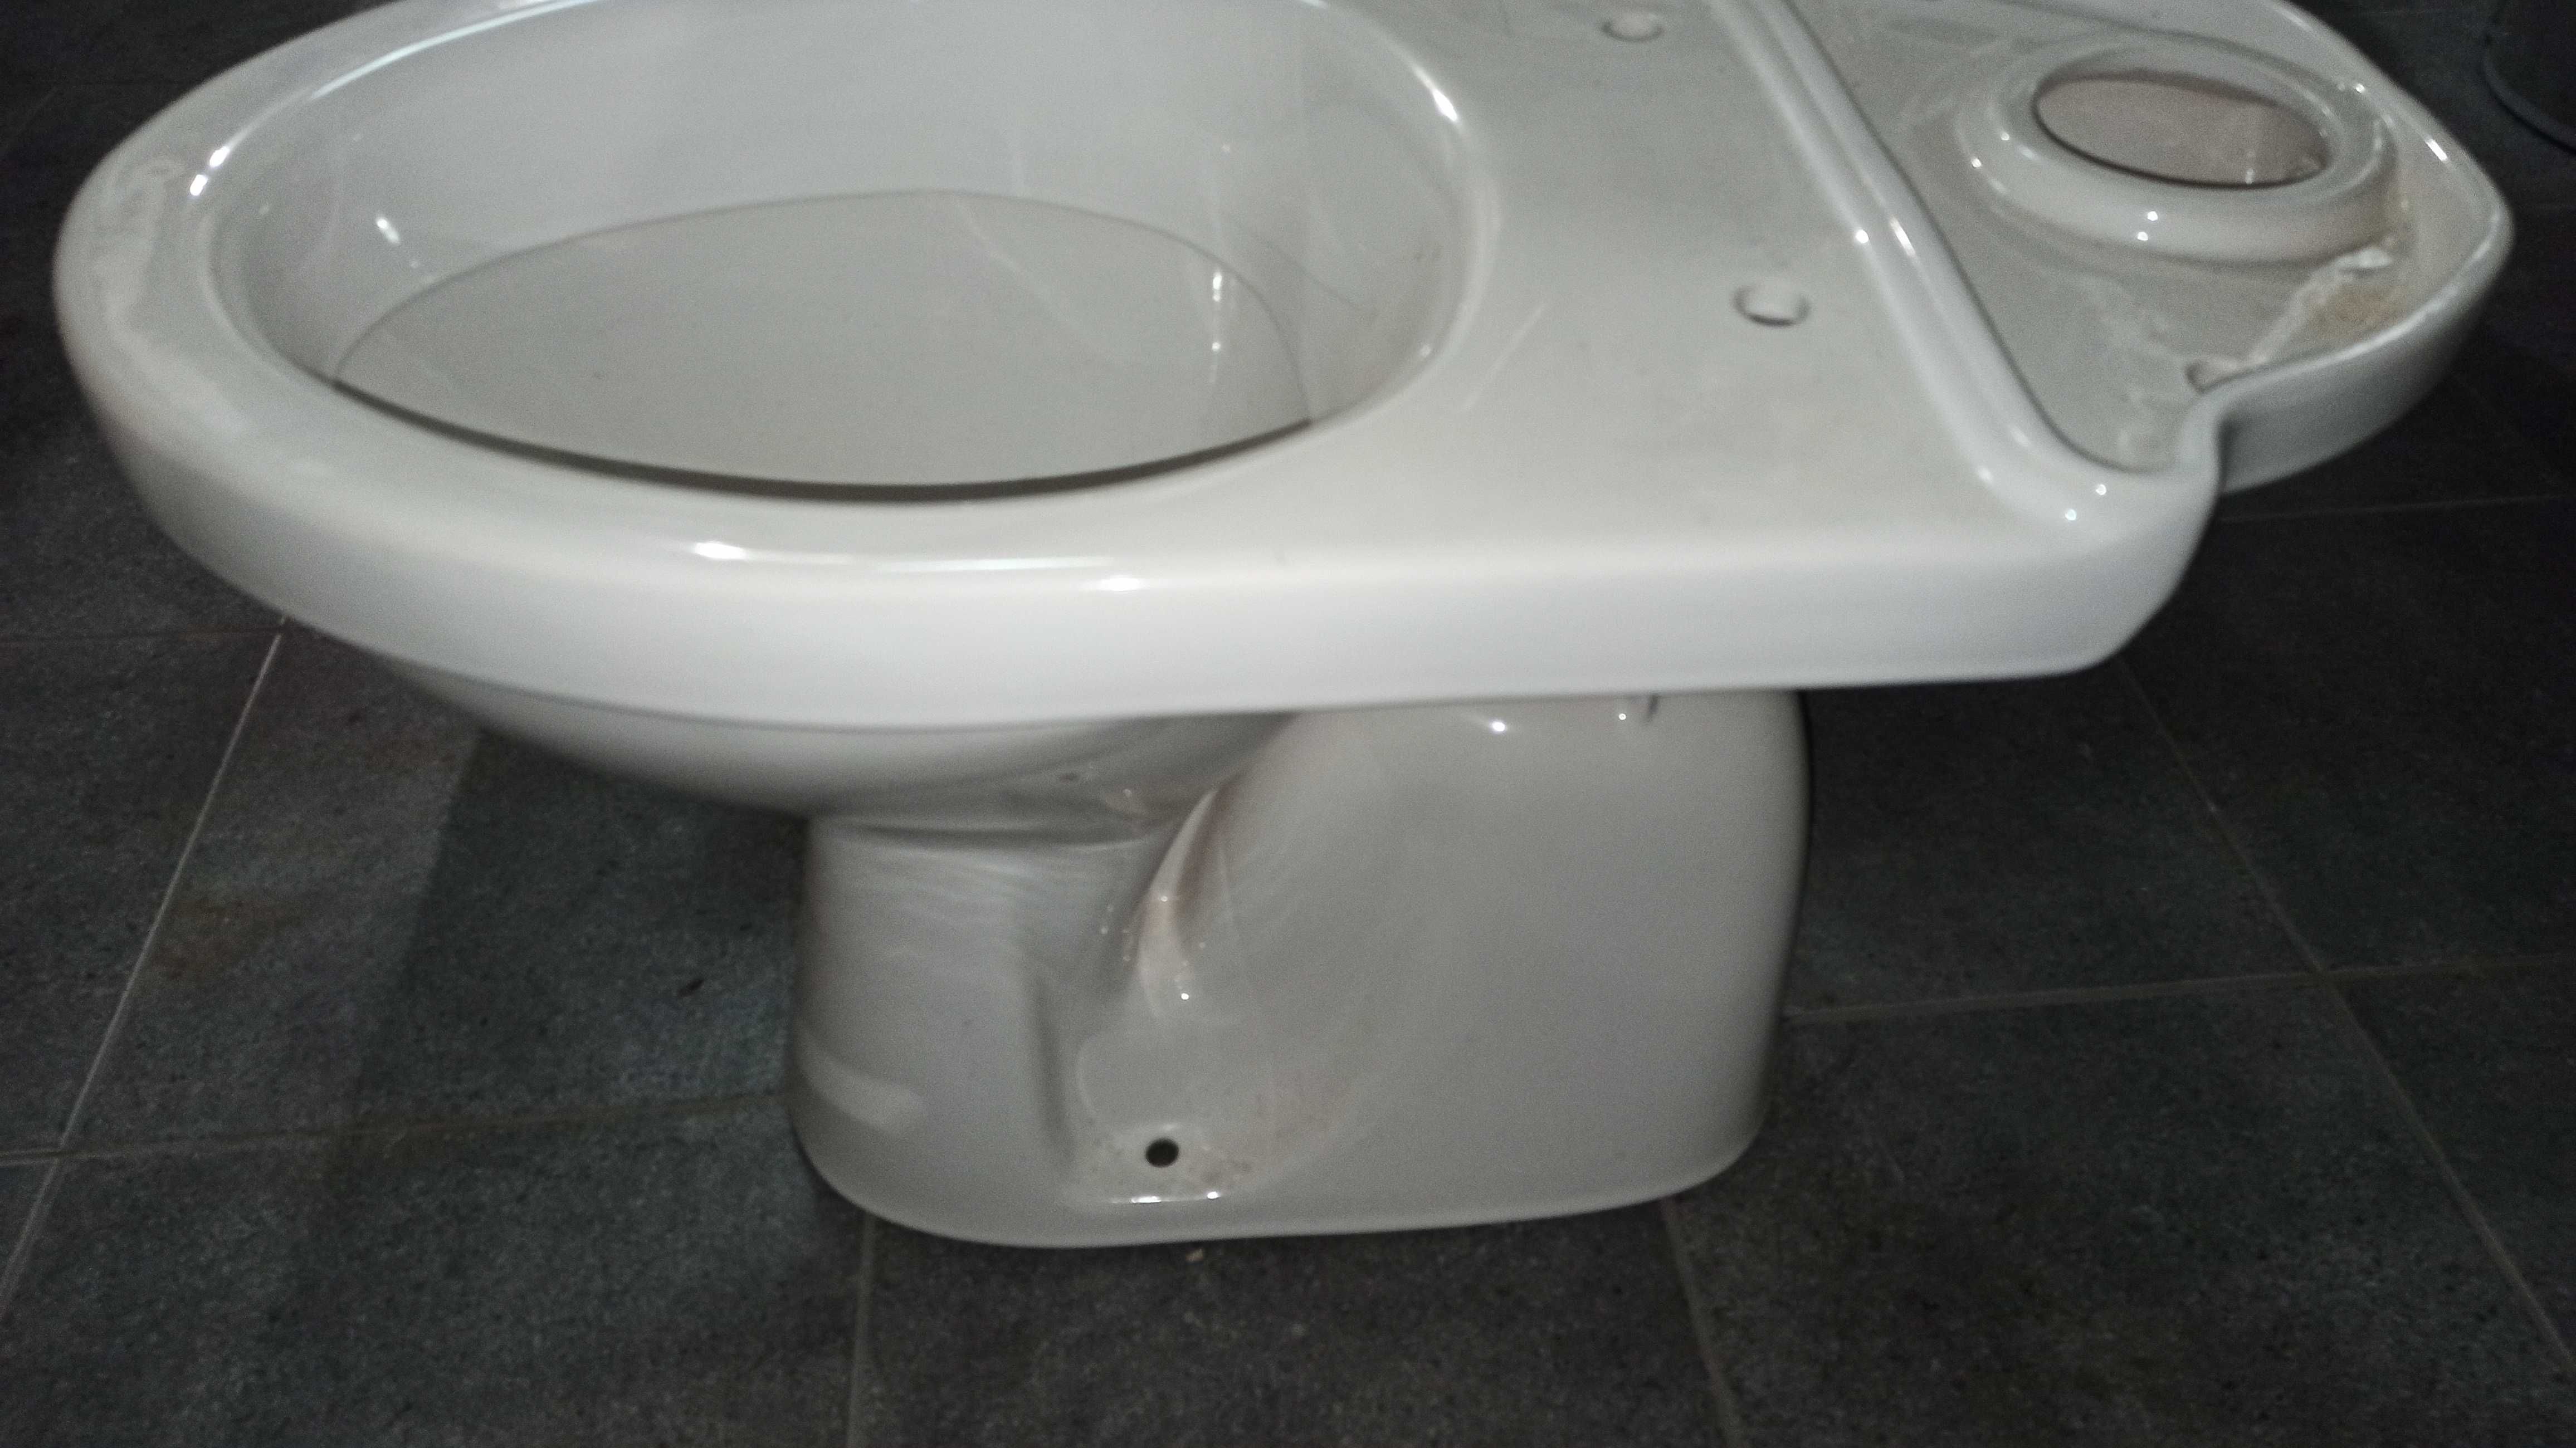 KOŁO SOLO Kompakt WC odpływ pionowy